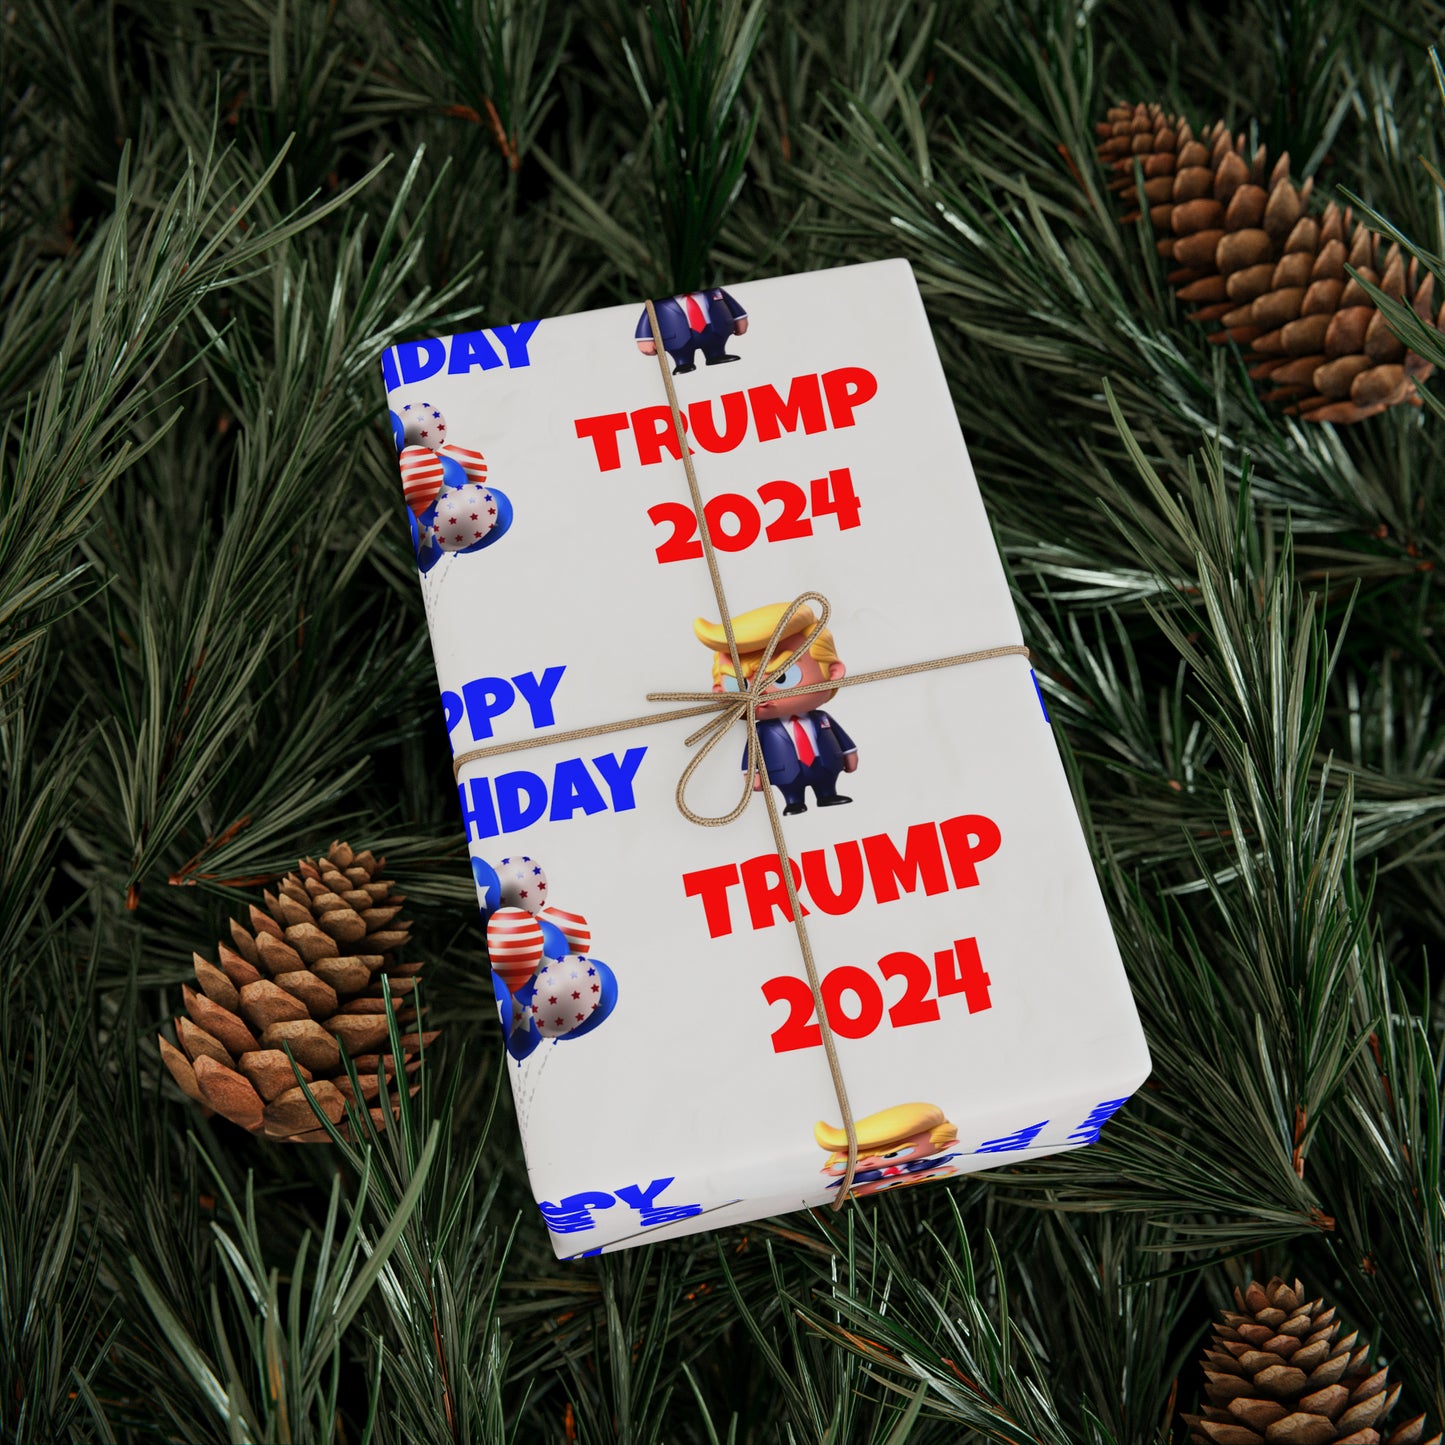 Happy Birthday Trump 2024 weißes MAGA Geburtstagsgeschenk-Geschenkpapier